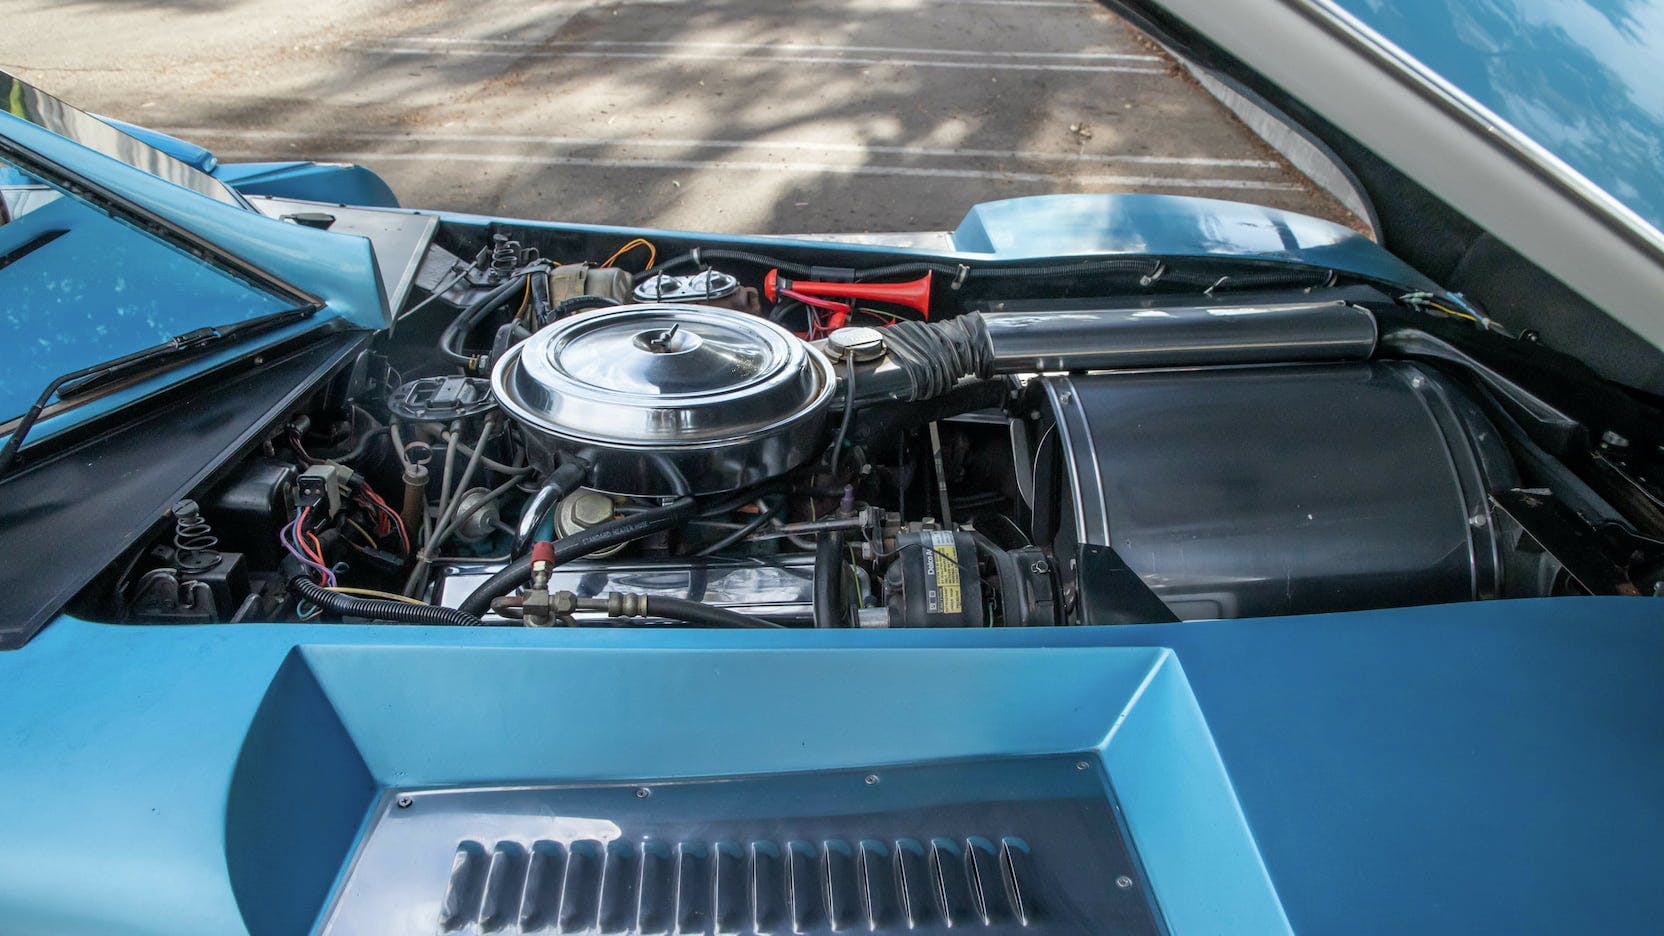 1969 Barrister Corvette Barris custom engine